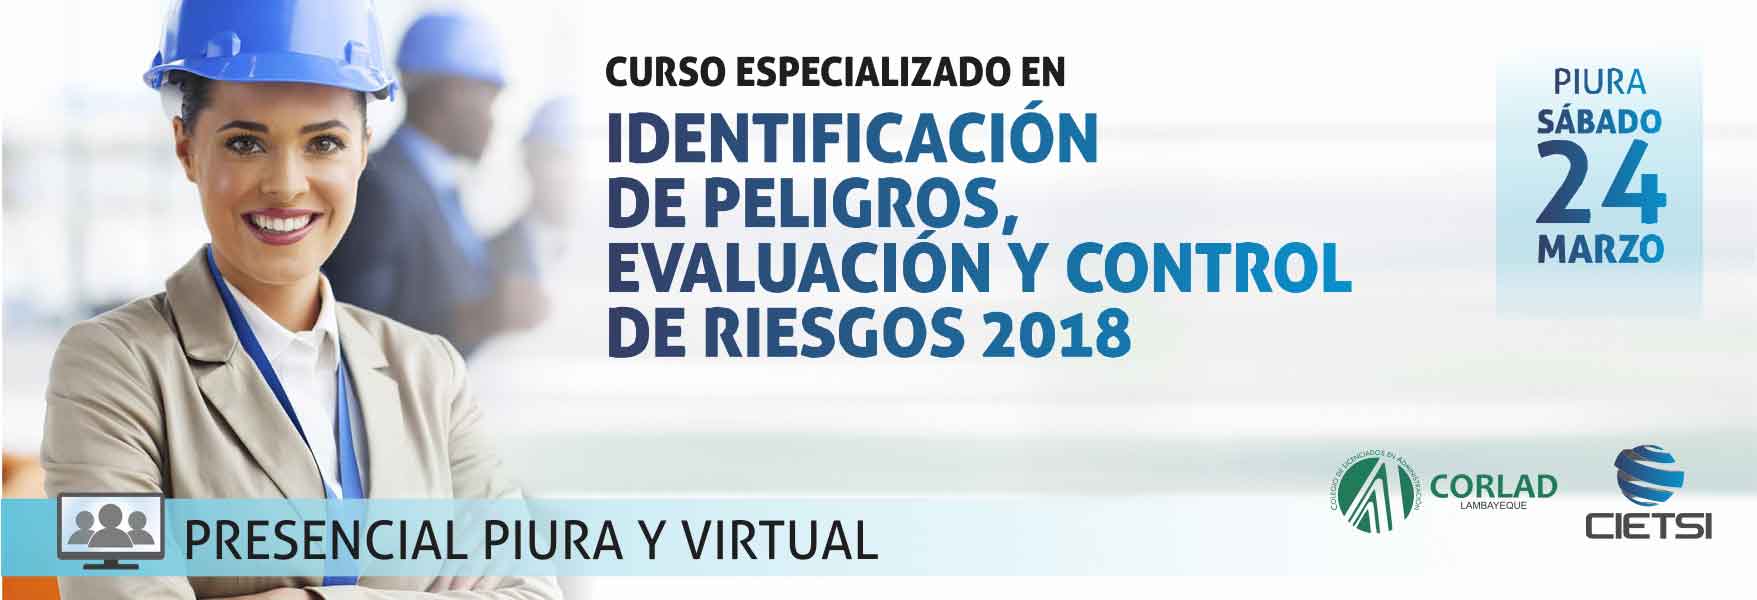 CURSO ESPECIALIZADO IDENTIFICACIÓN DE PELIGROS, EVALUACIÓN Y CONTROL DE RIESGOS 2018